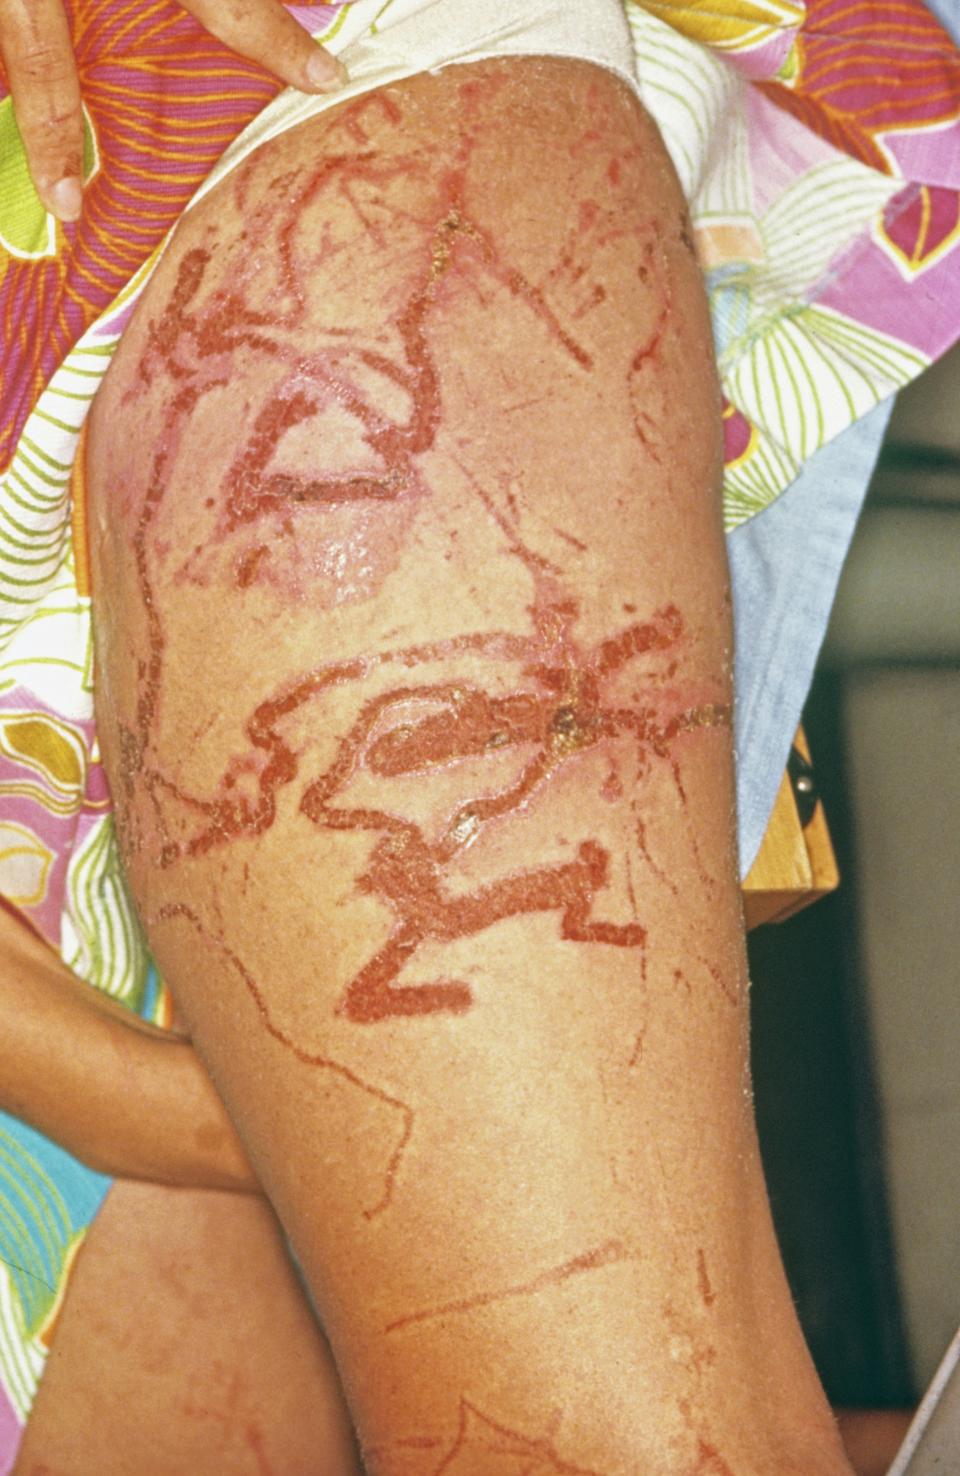 La necrosis en la piel es una de las causas de la picadura de la cubomedusa. (Getty Images).